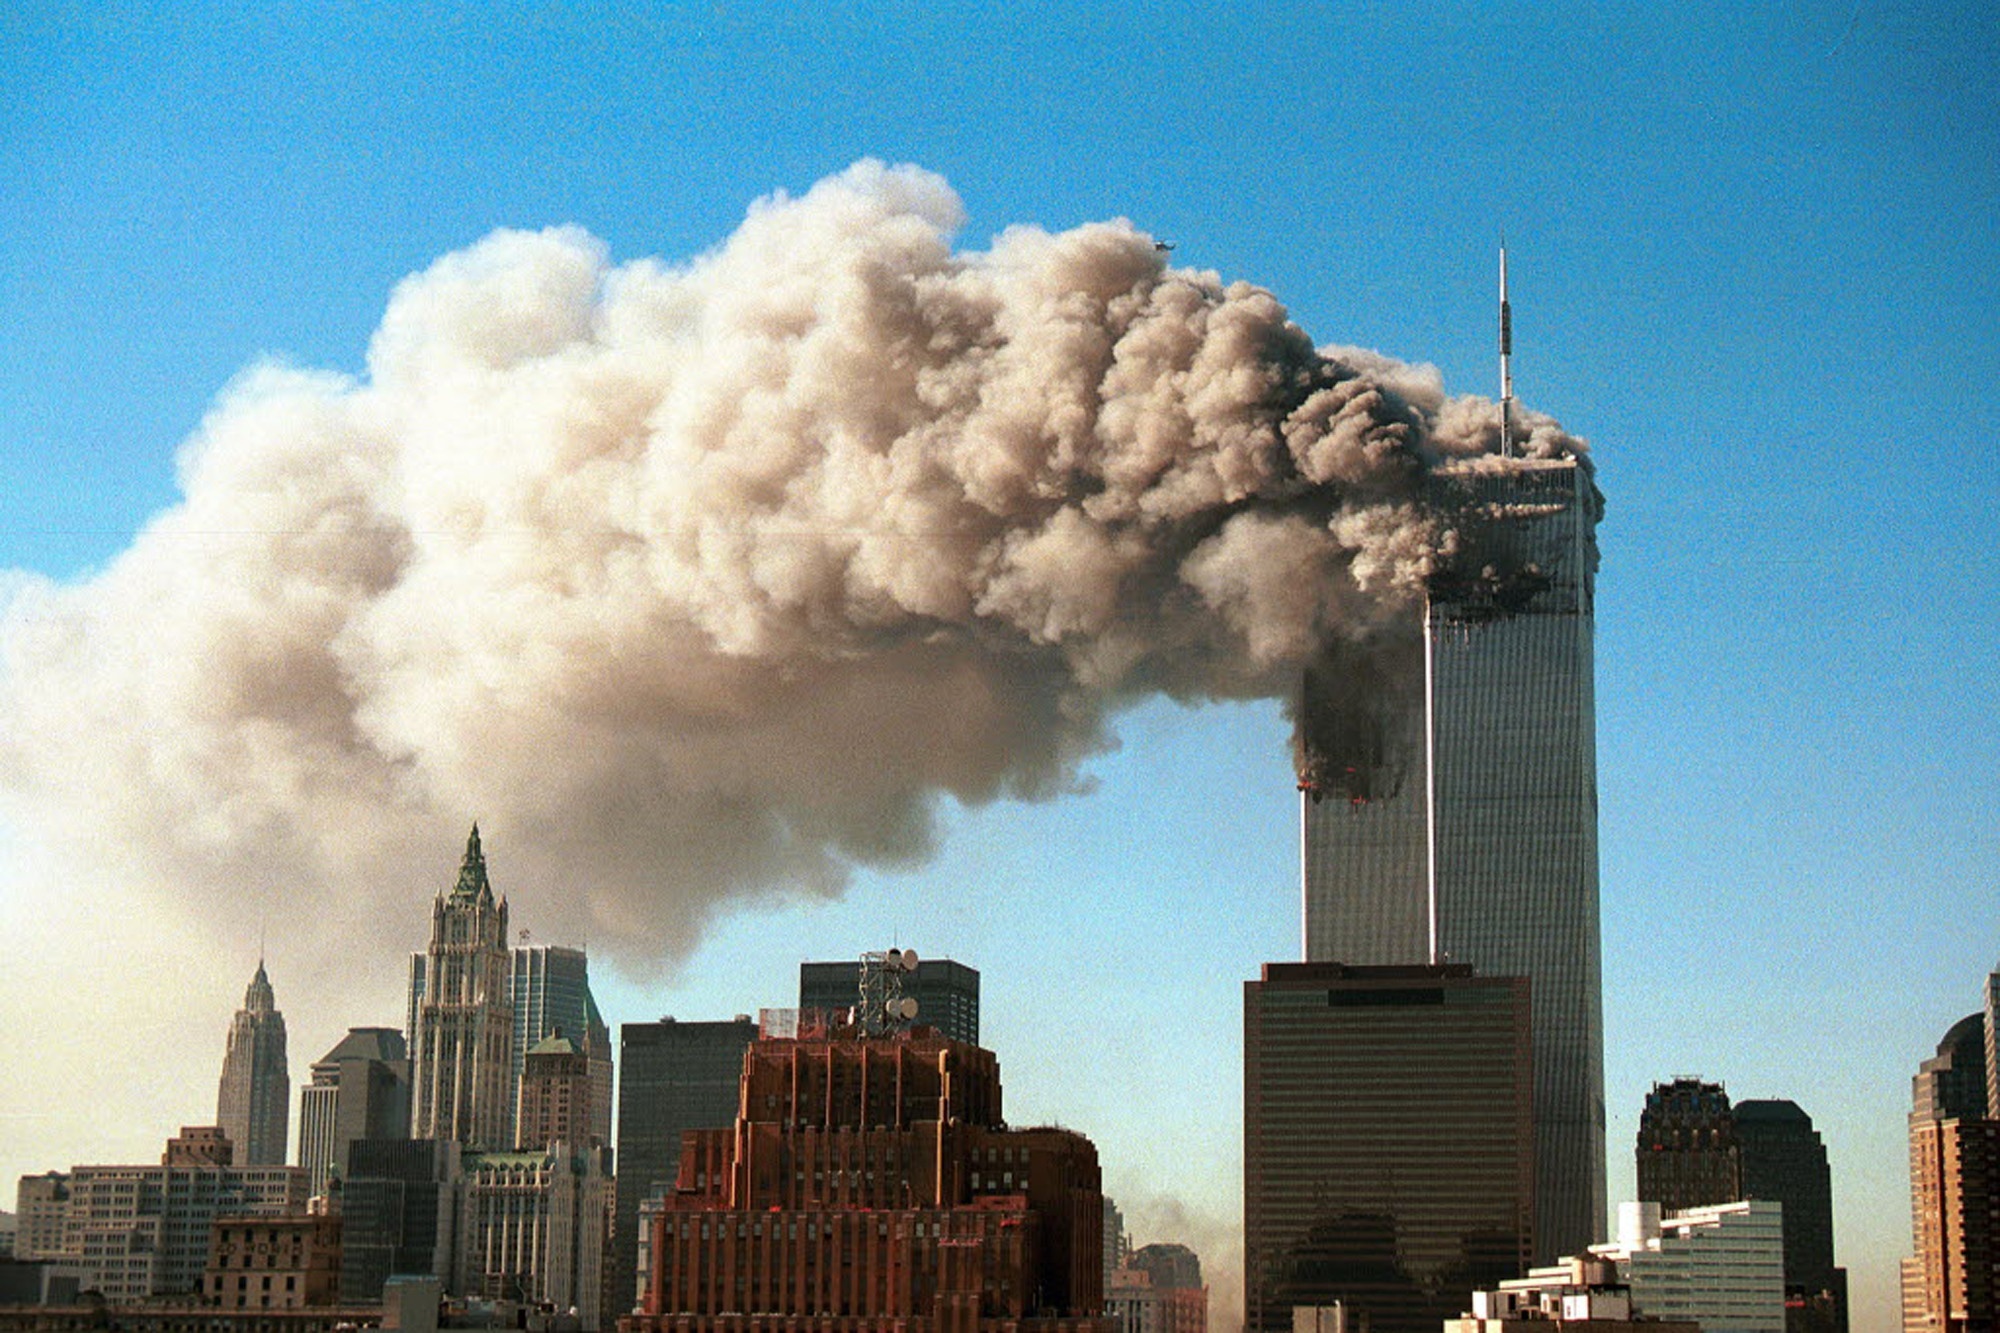 9 11 usa misunderstanding islam